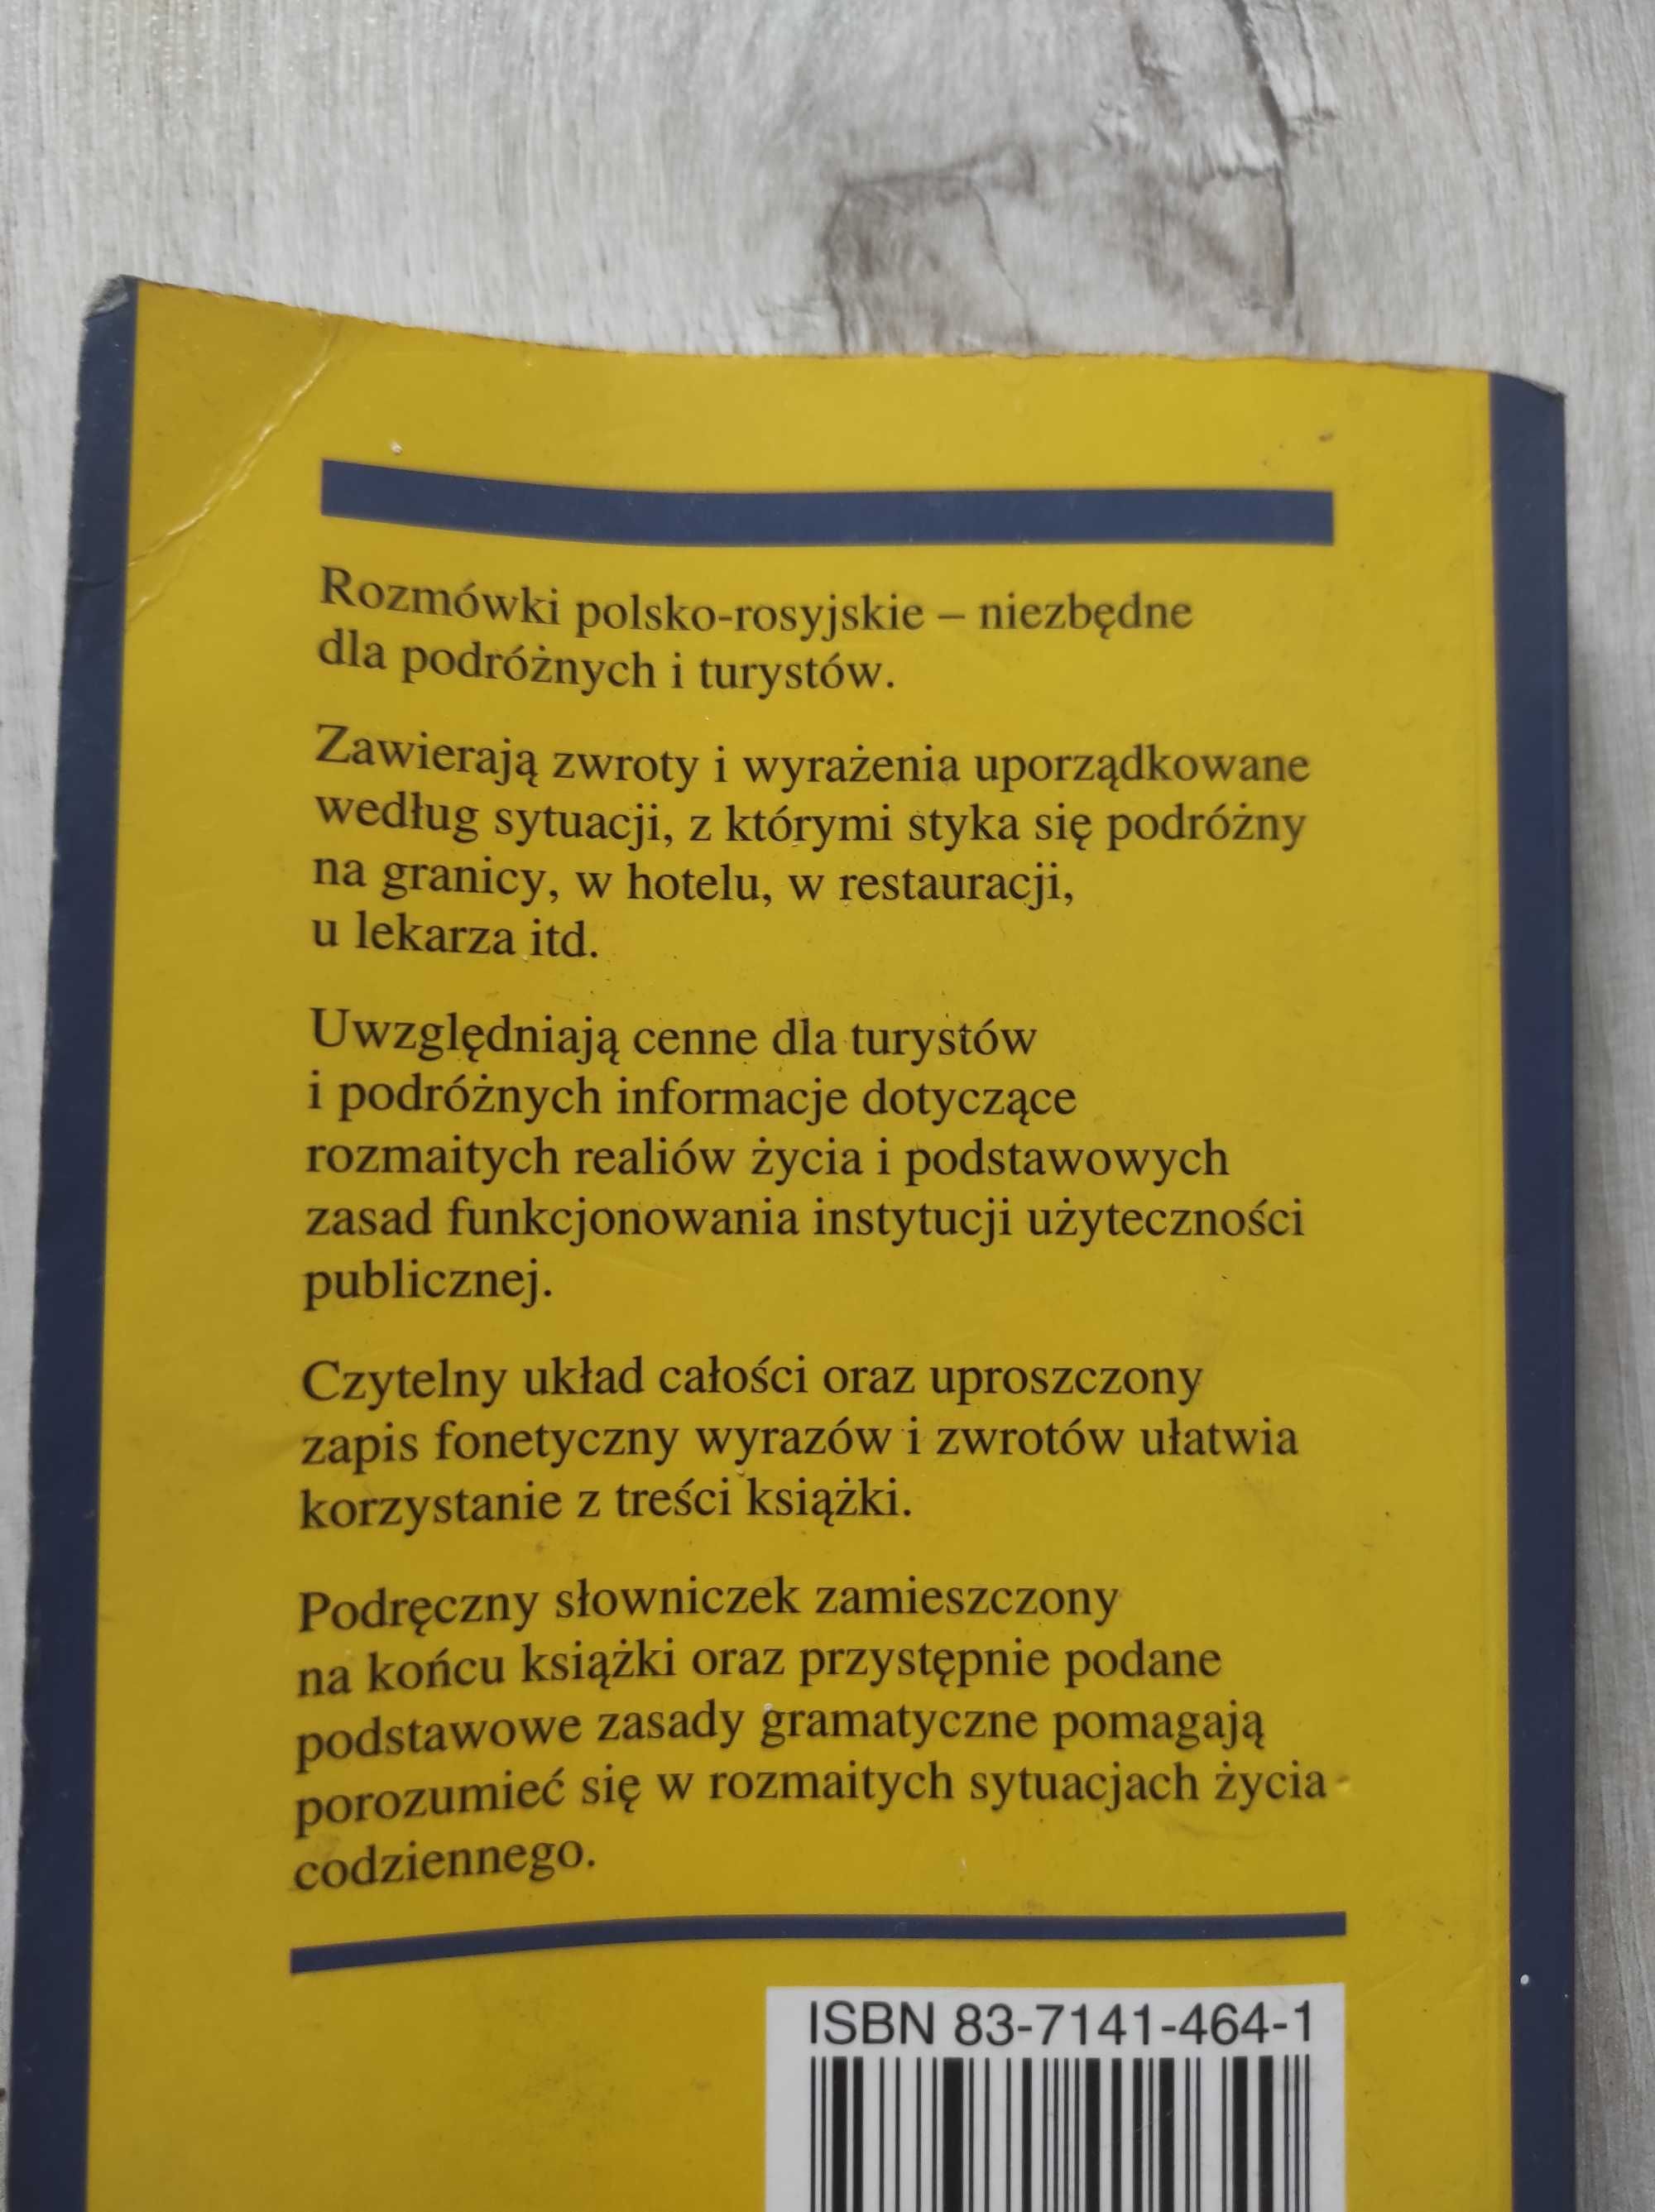 Książka "Rozmówki polsko-rosyjskie"